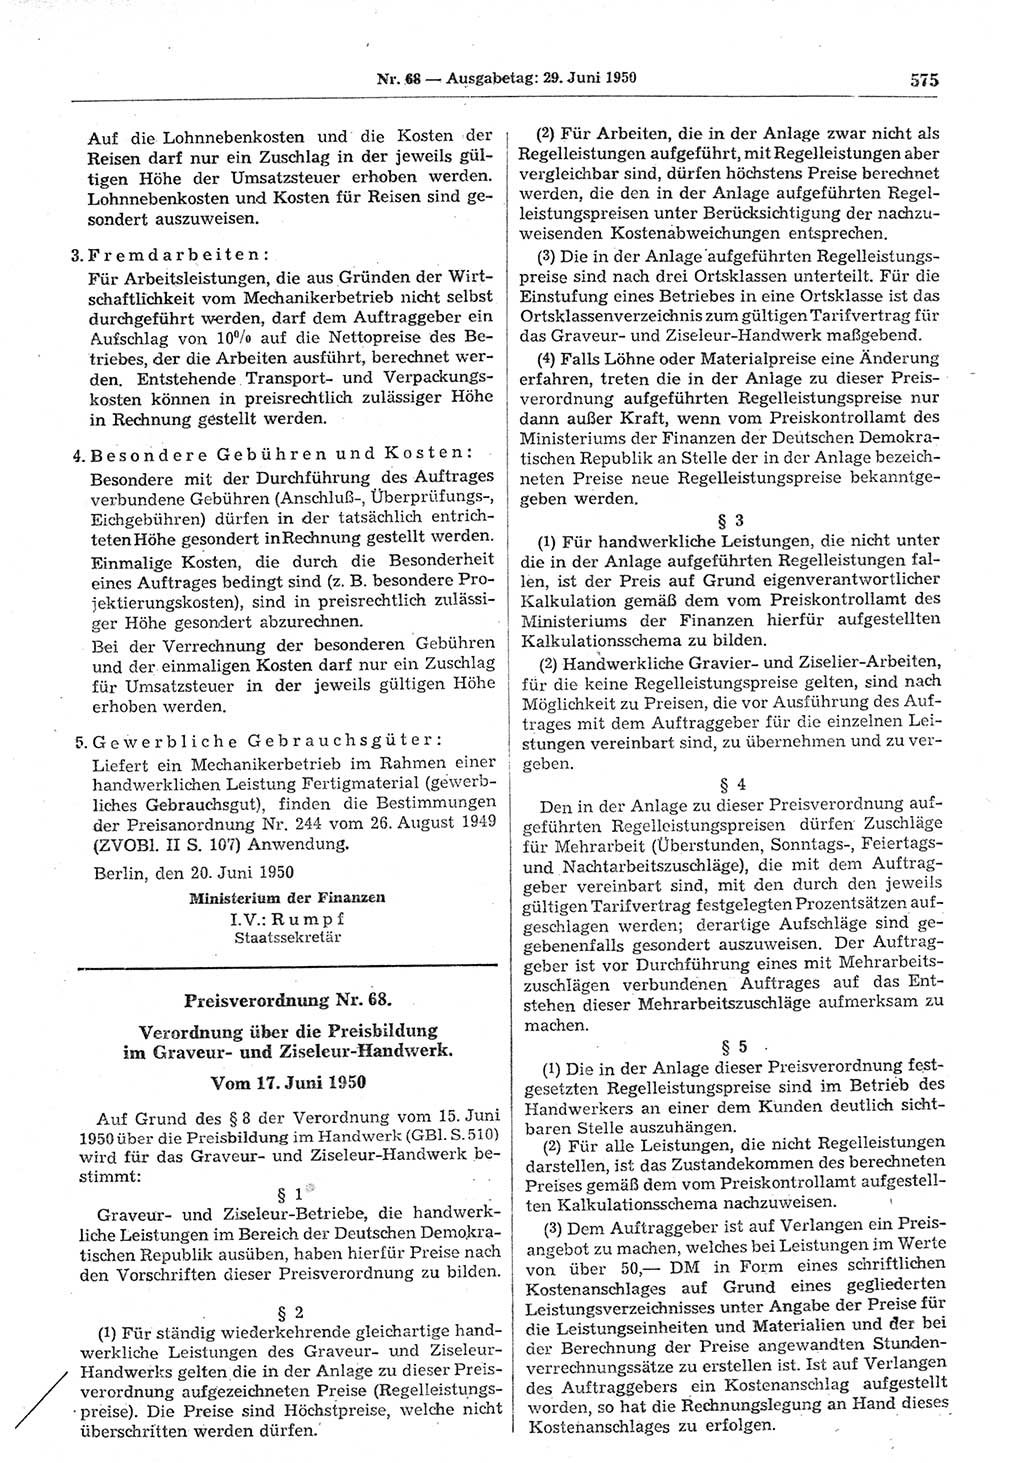 Gesetzblatt (GBl.) der Deutschen Demokratischen Republik (DDR) 1950, Seite 575 (GBl. DDR 1950, S. 575)